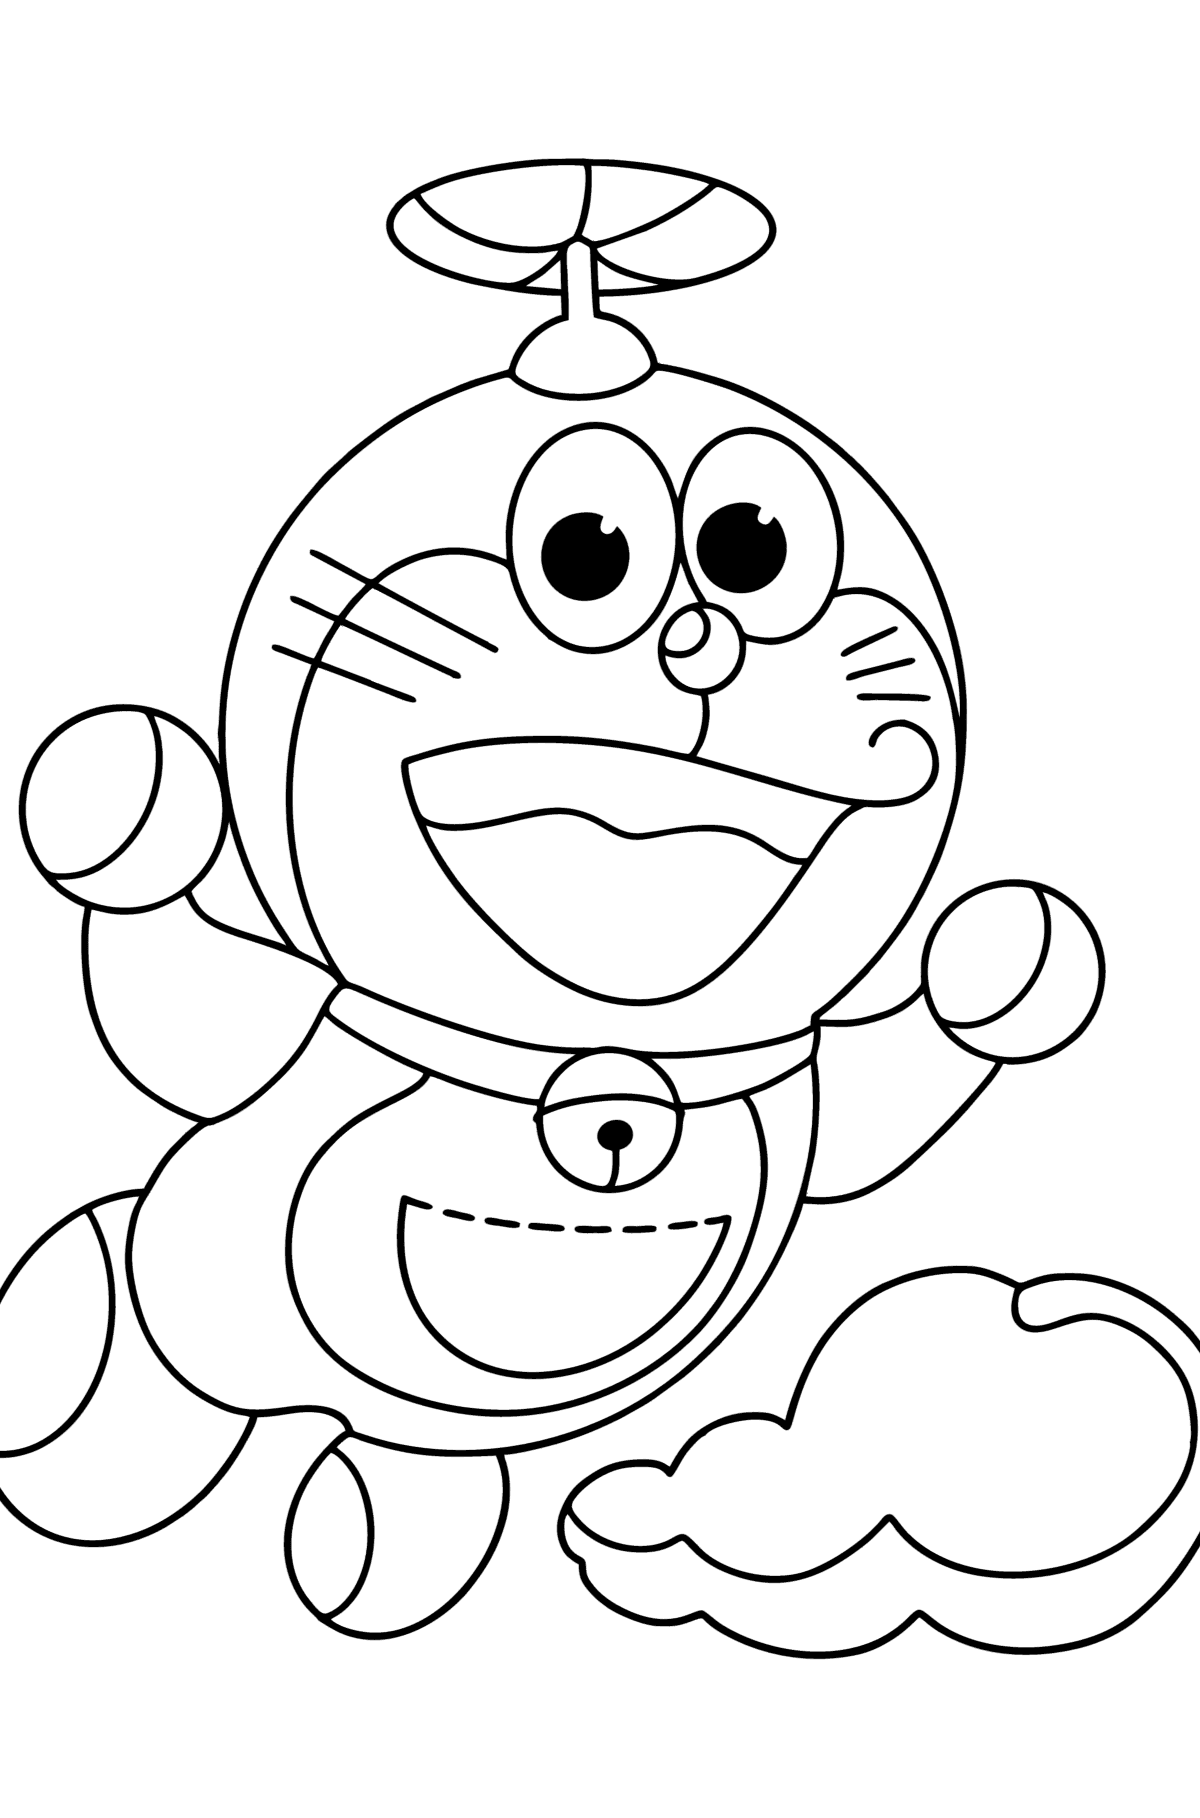 Boyama sayfası Doraemon helikopter - Boyamalar çocuklar için